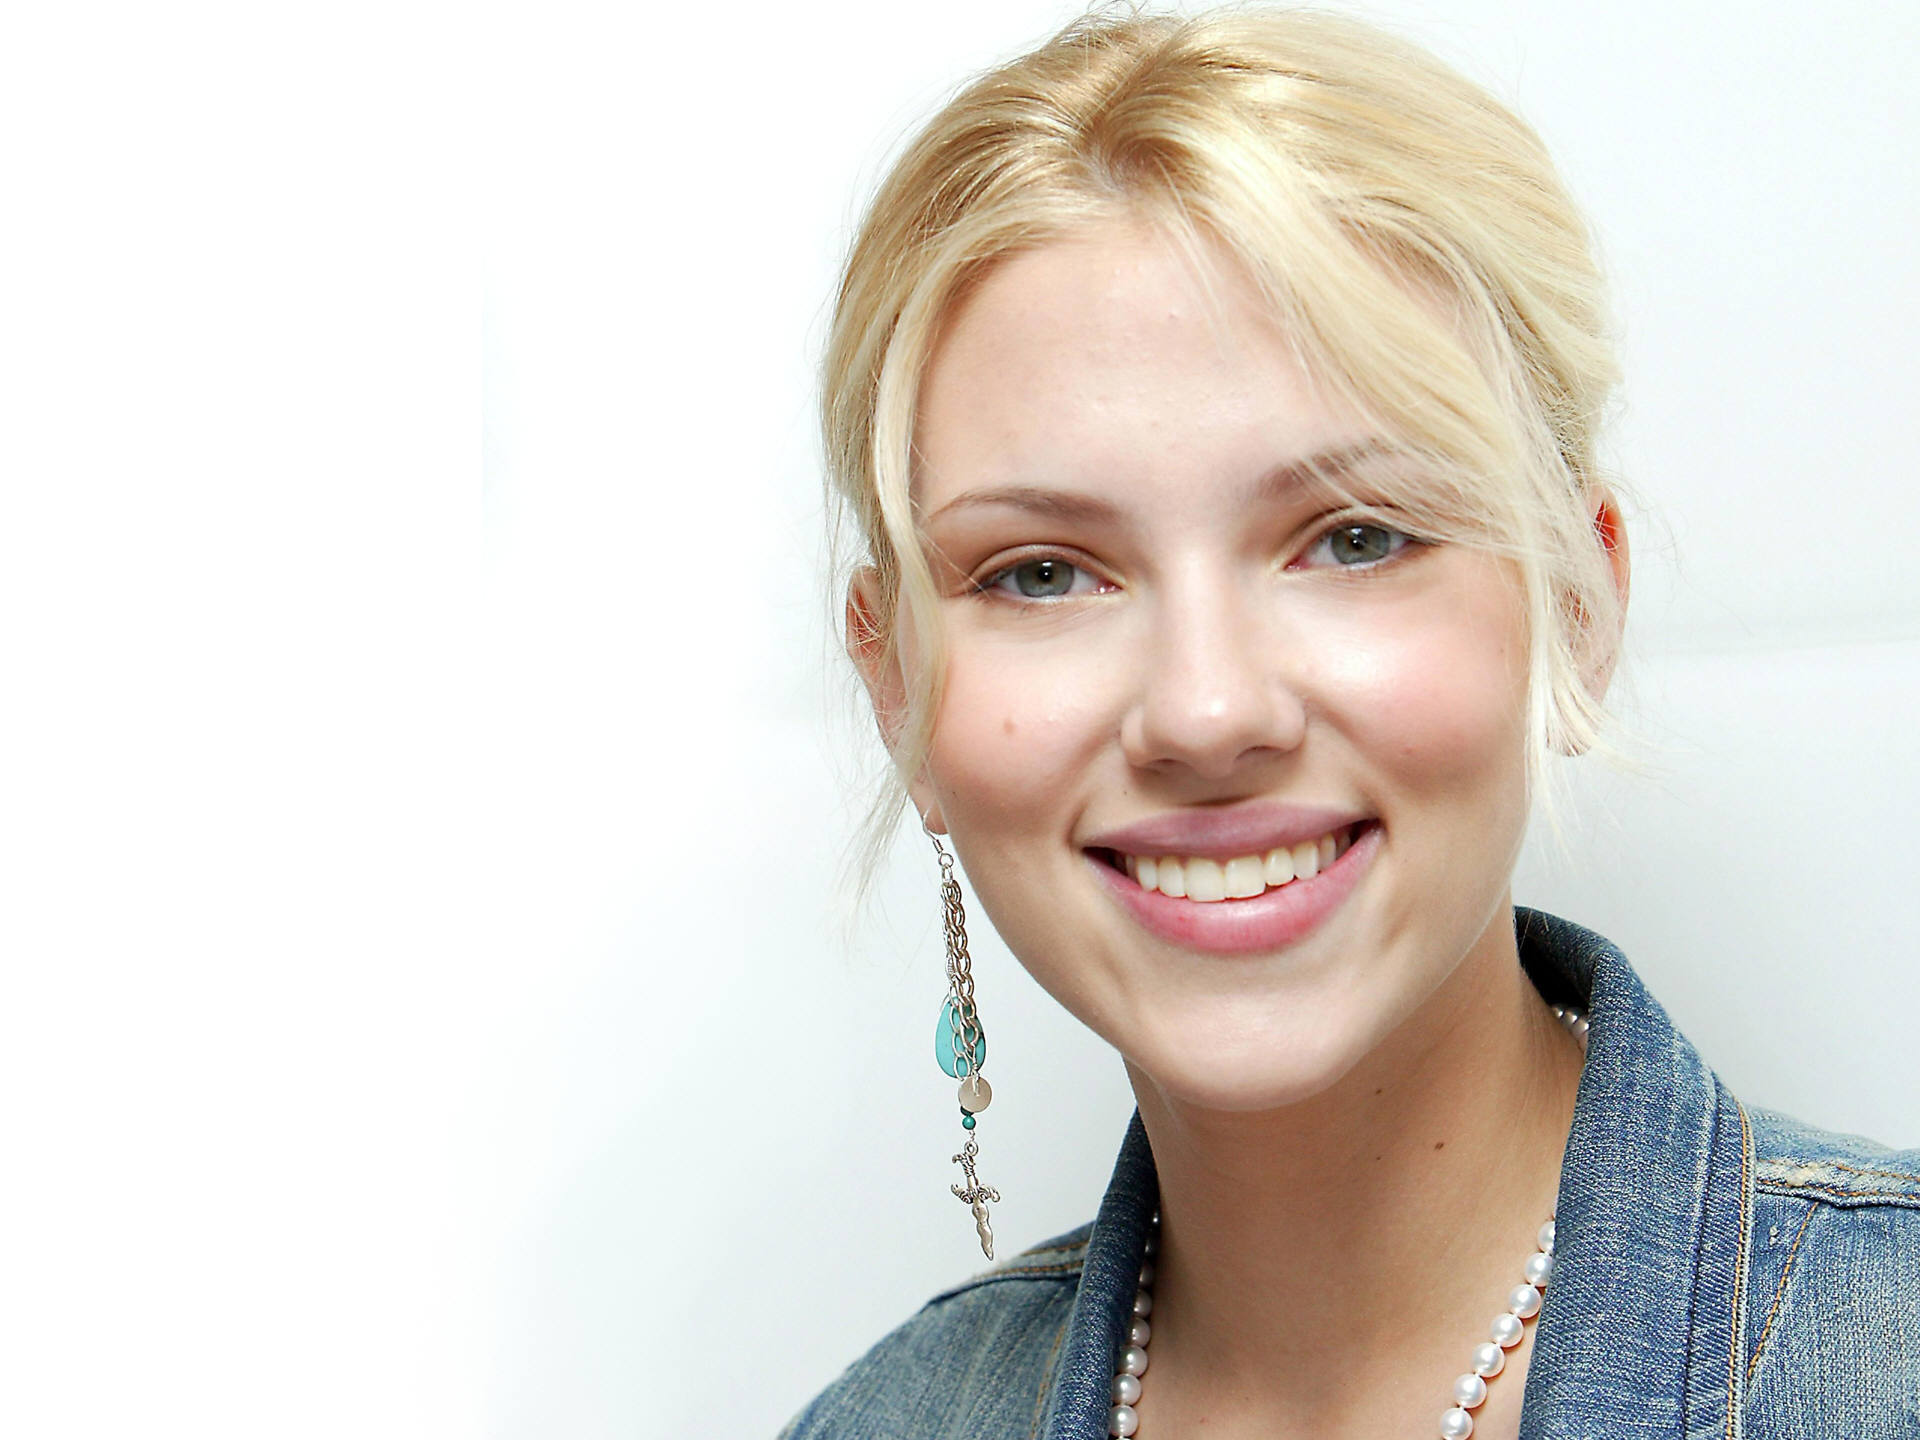 Ing The Scarlett Johansson Wallpaper Named Face